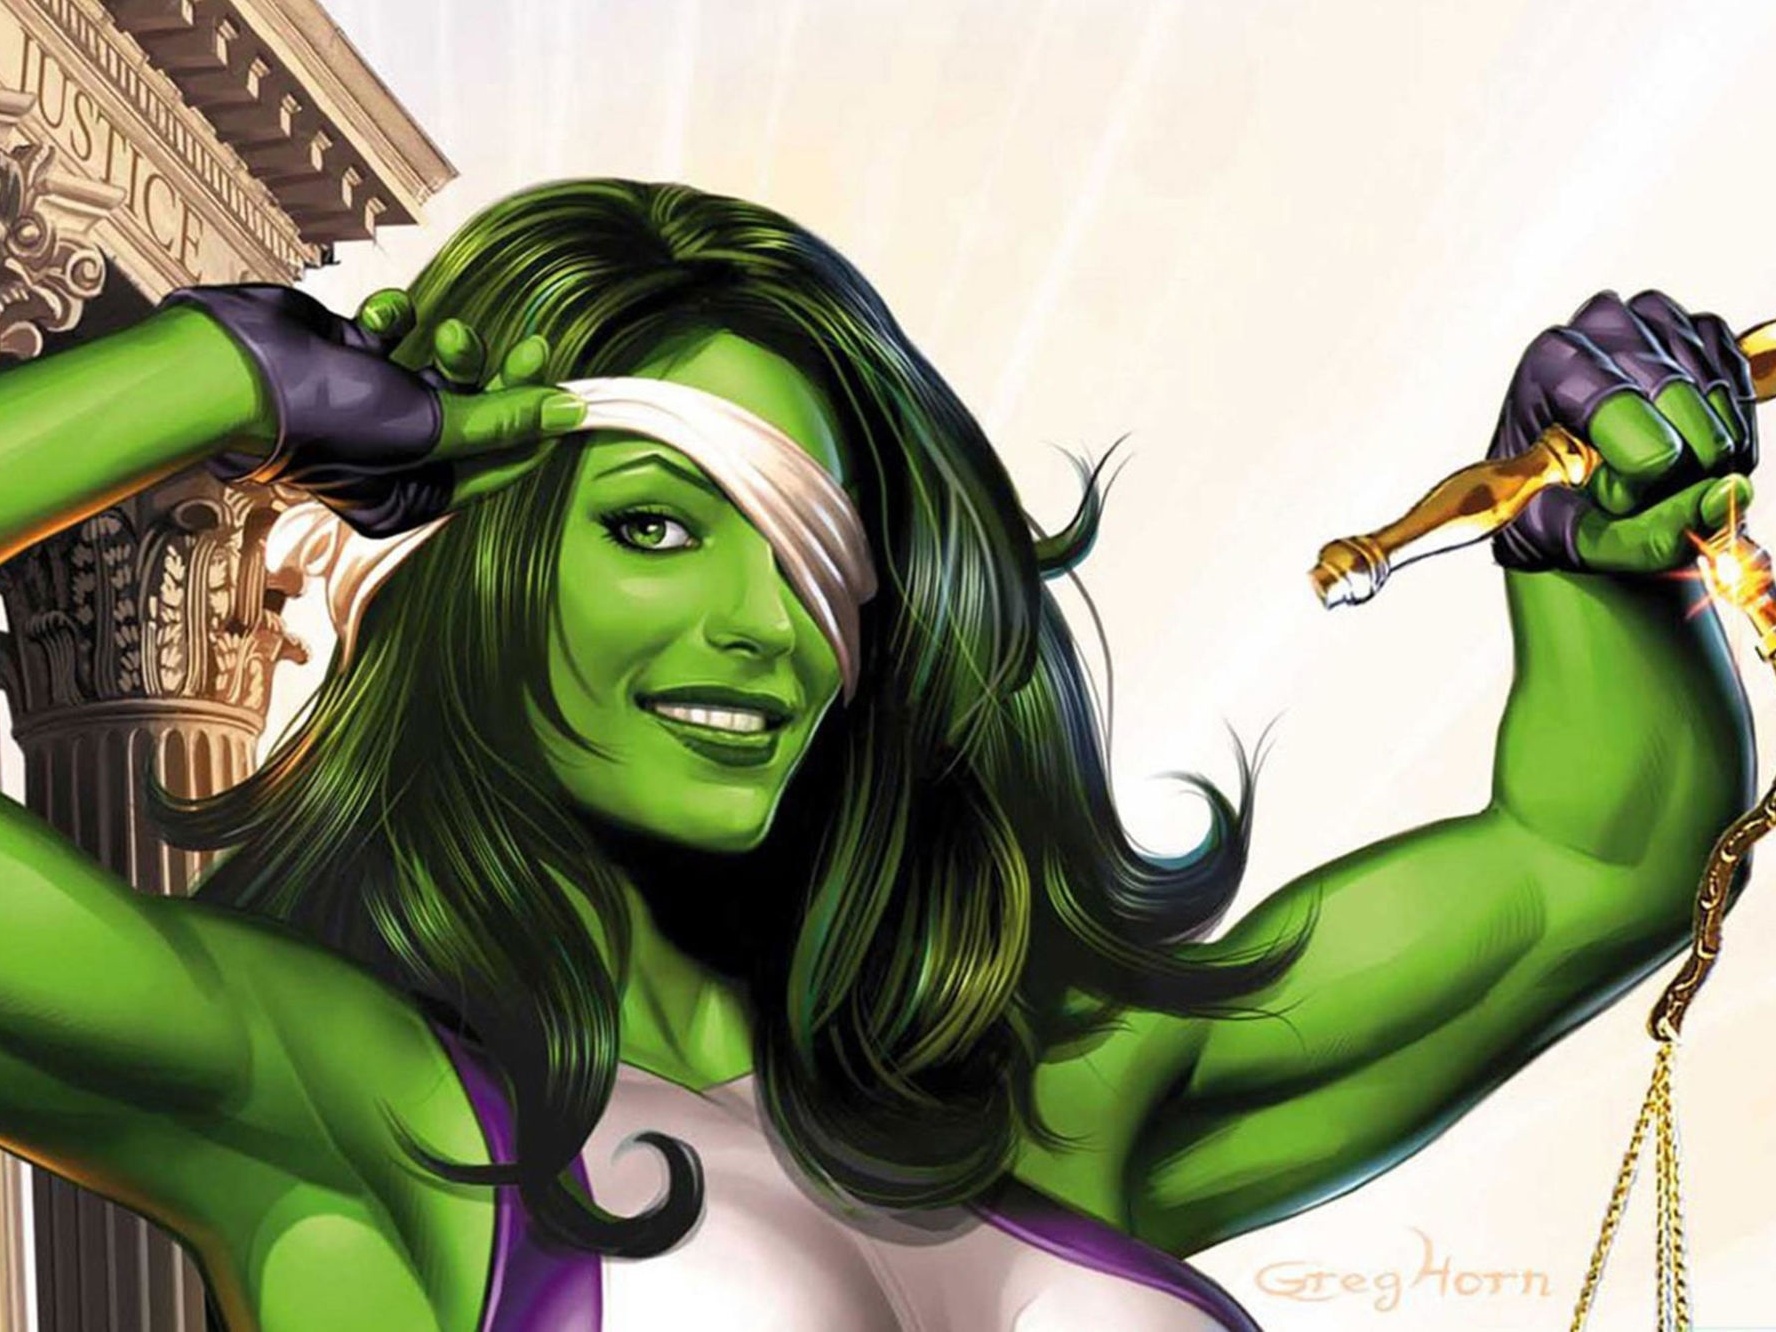 Mulher-Hulk 7 coisas que você precisa saber sobre a personagem que ganhou série - 06/09/2019